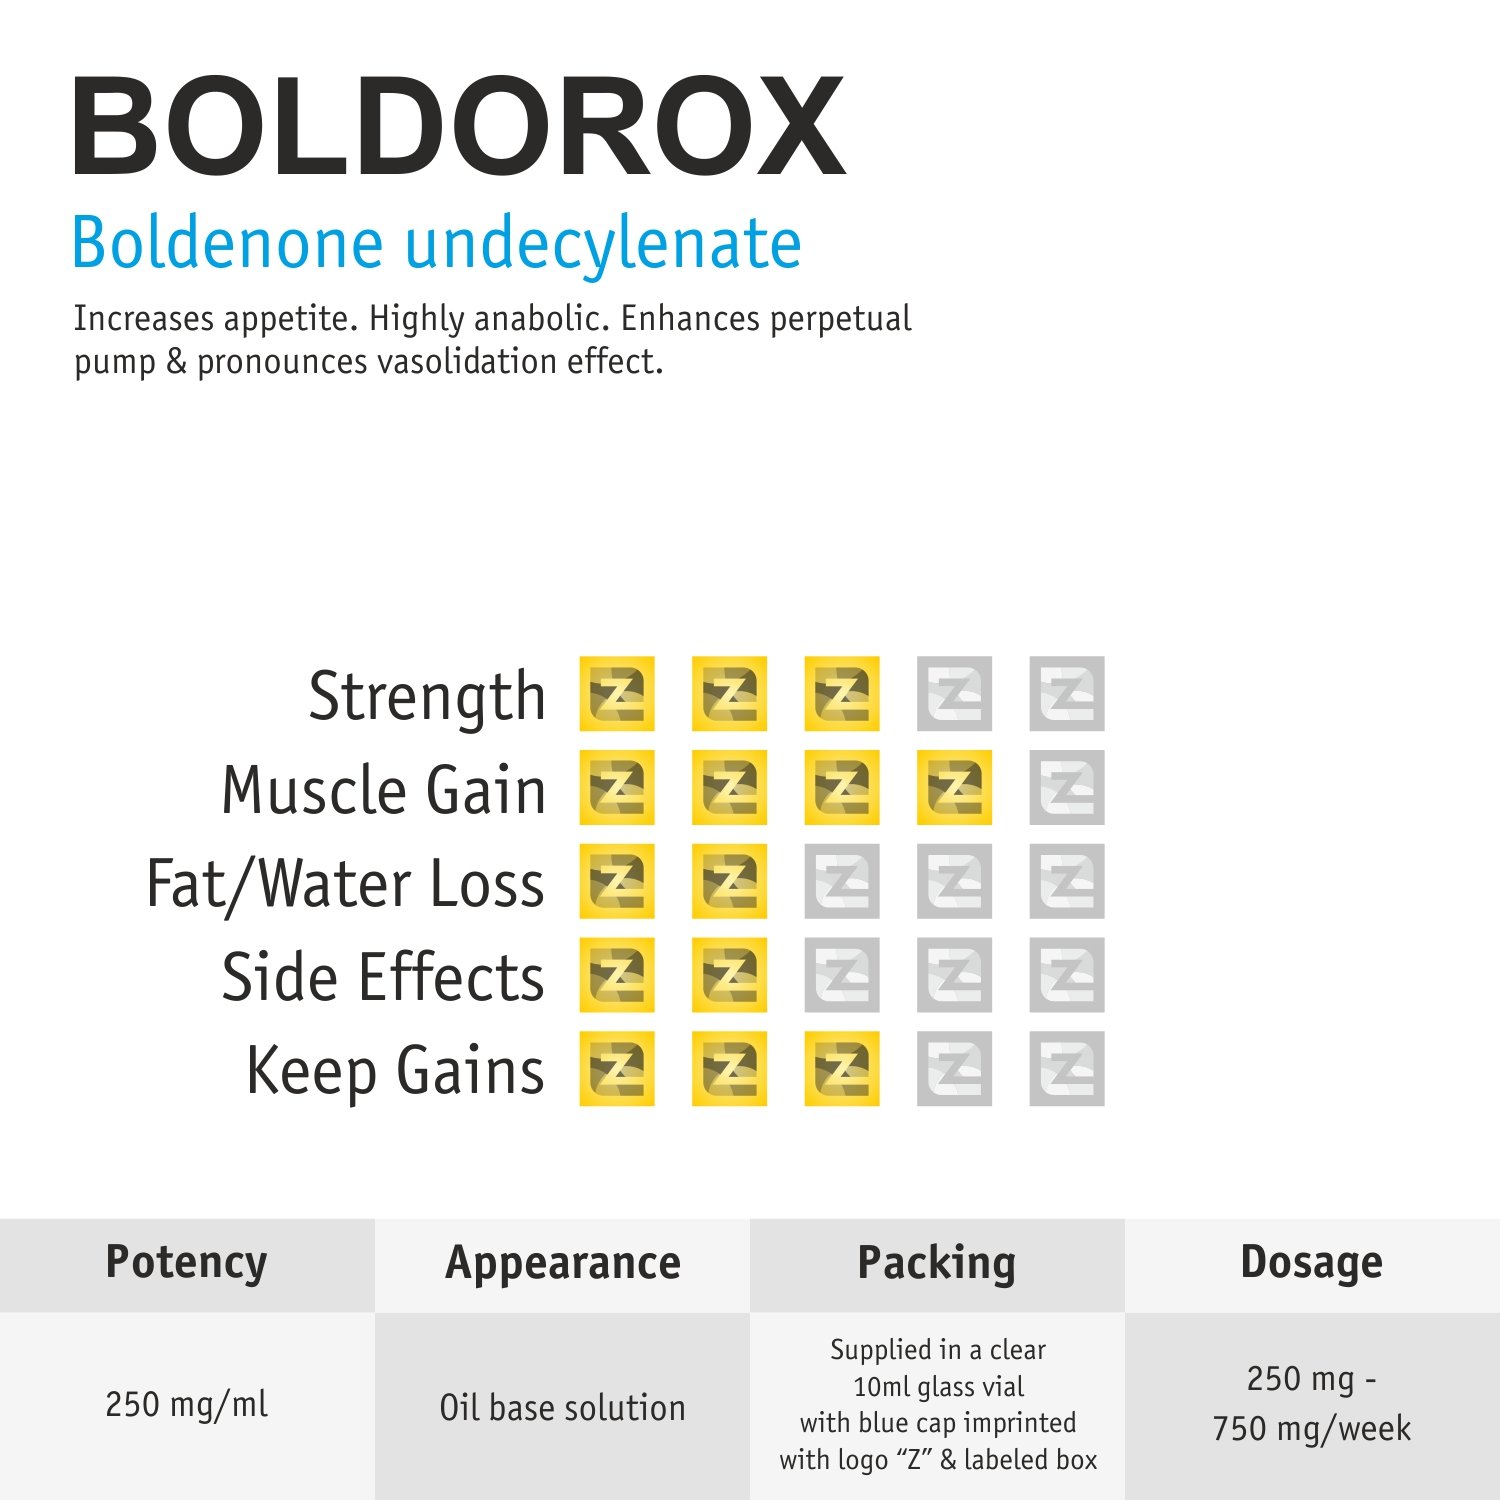 Boldorox VIAL ZZerox Pharma